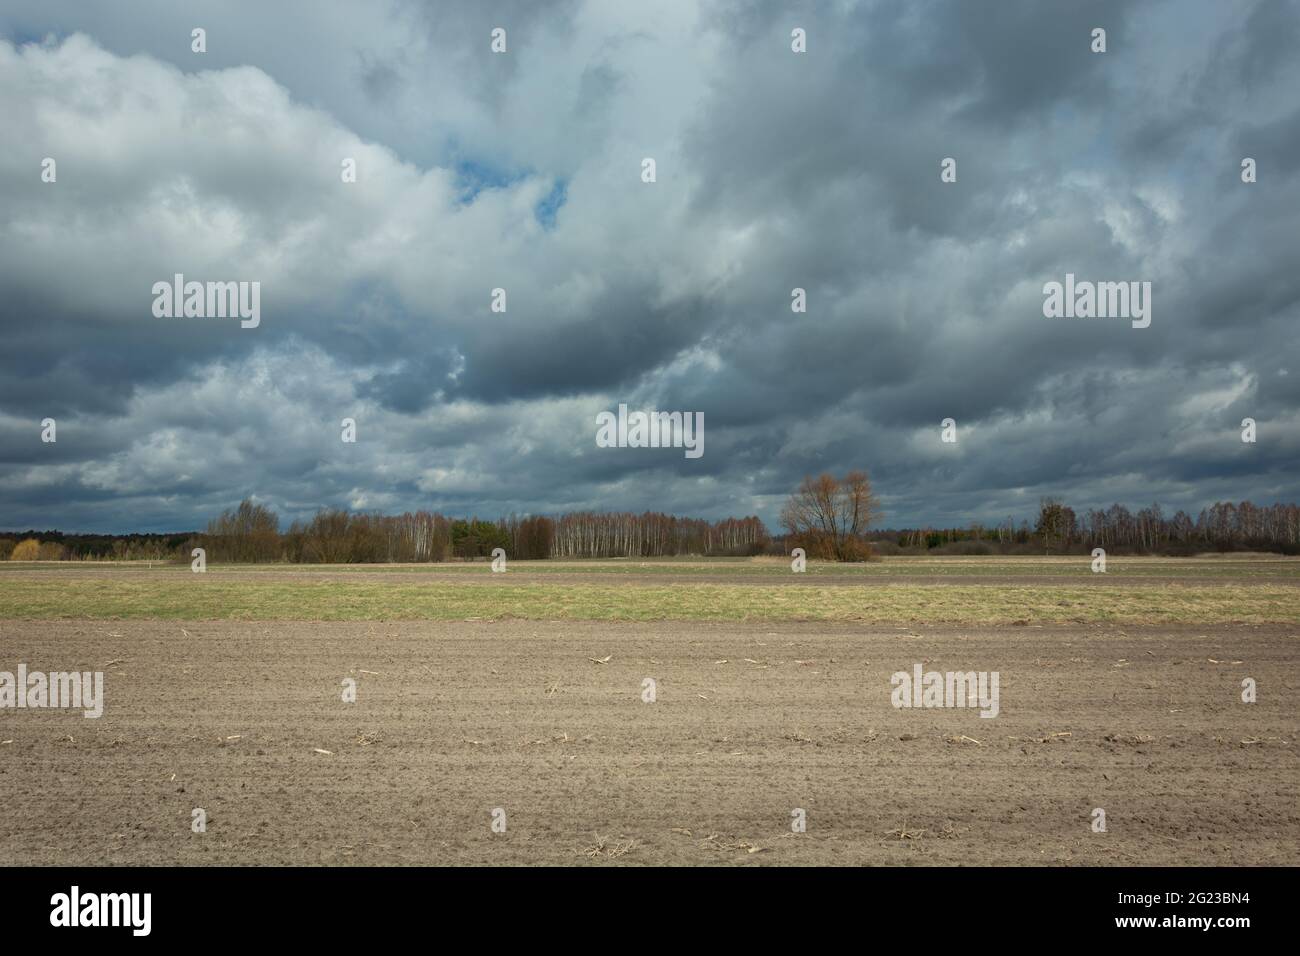 Terreni agricoli arati e nuvole piovose scure nel cielo Foto Stock